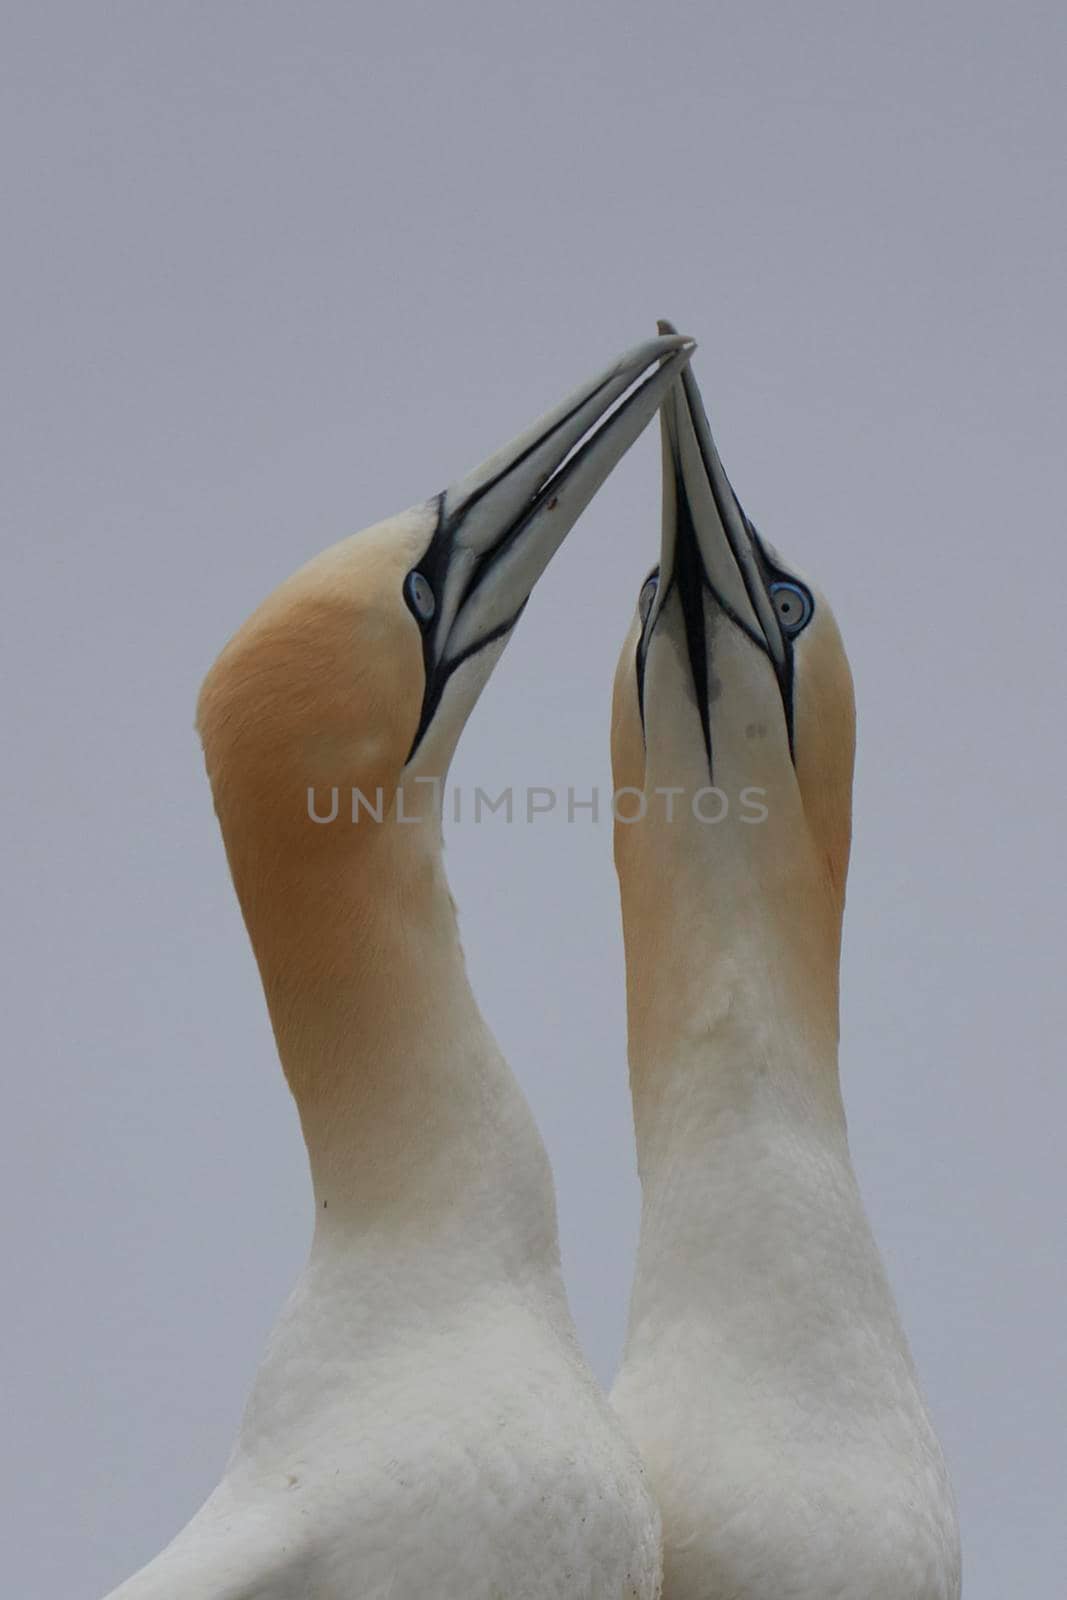 Gannet courtship by JeremyRichards